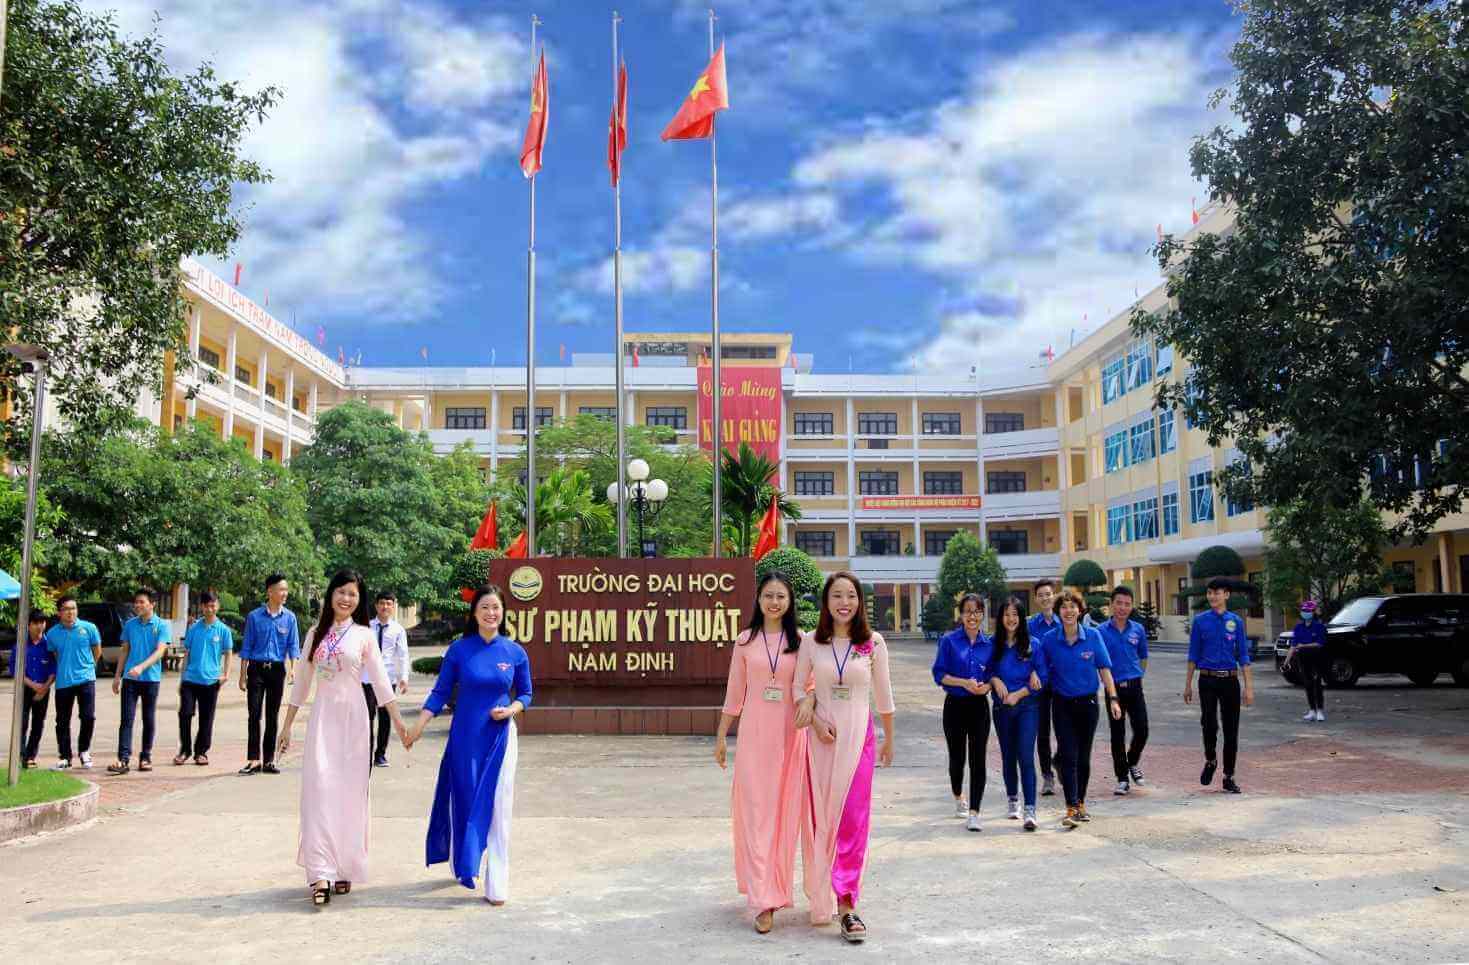 Đại học Sư phạm Kỹ thuật Nam Định